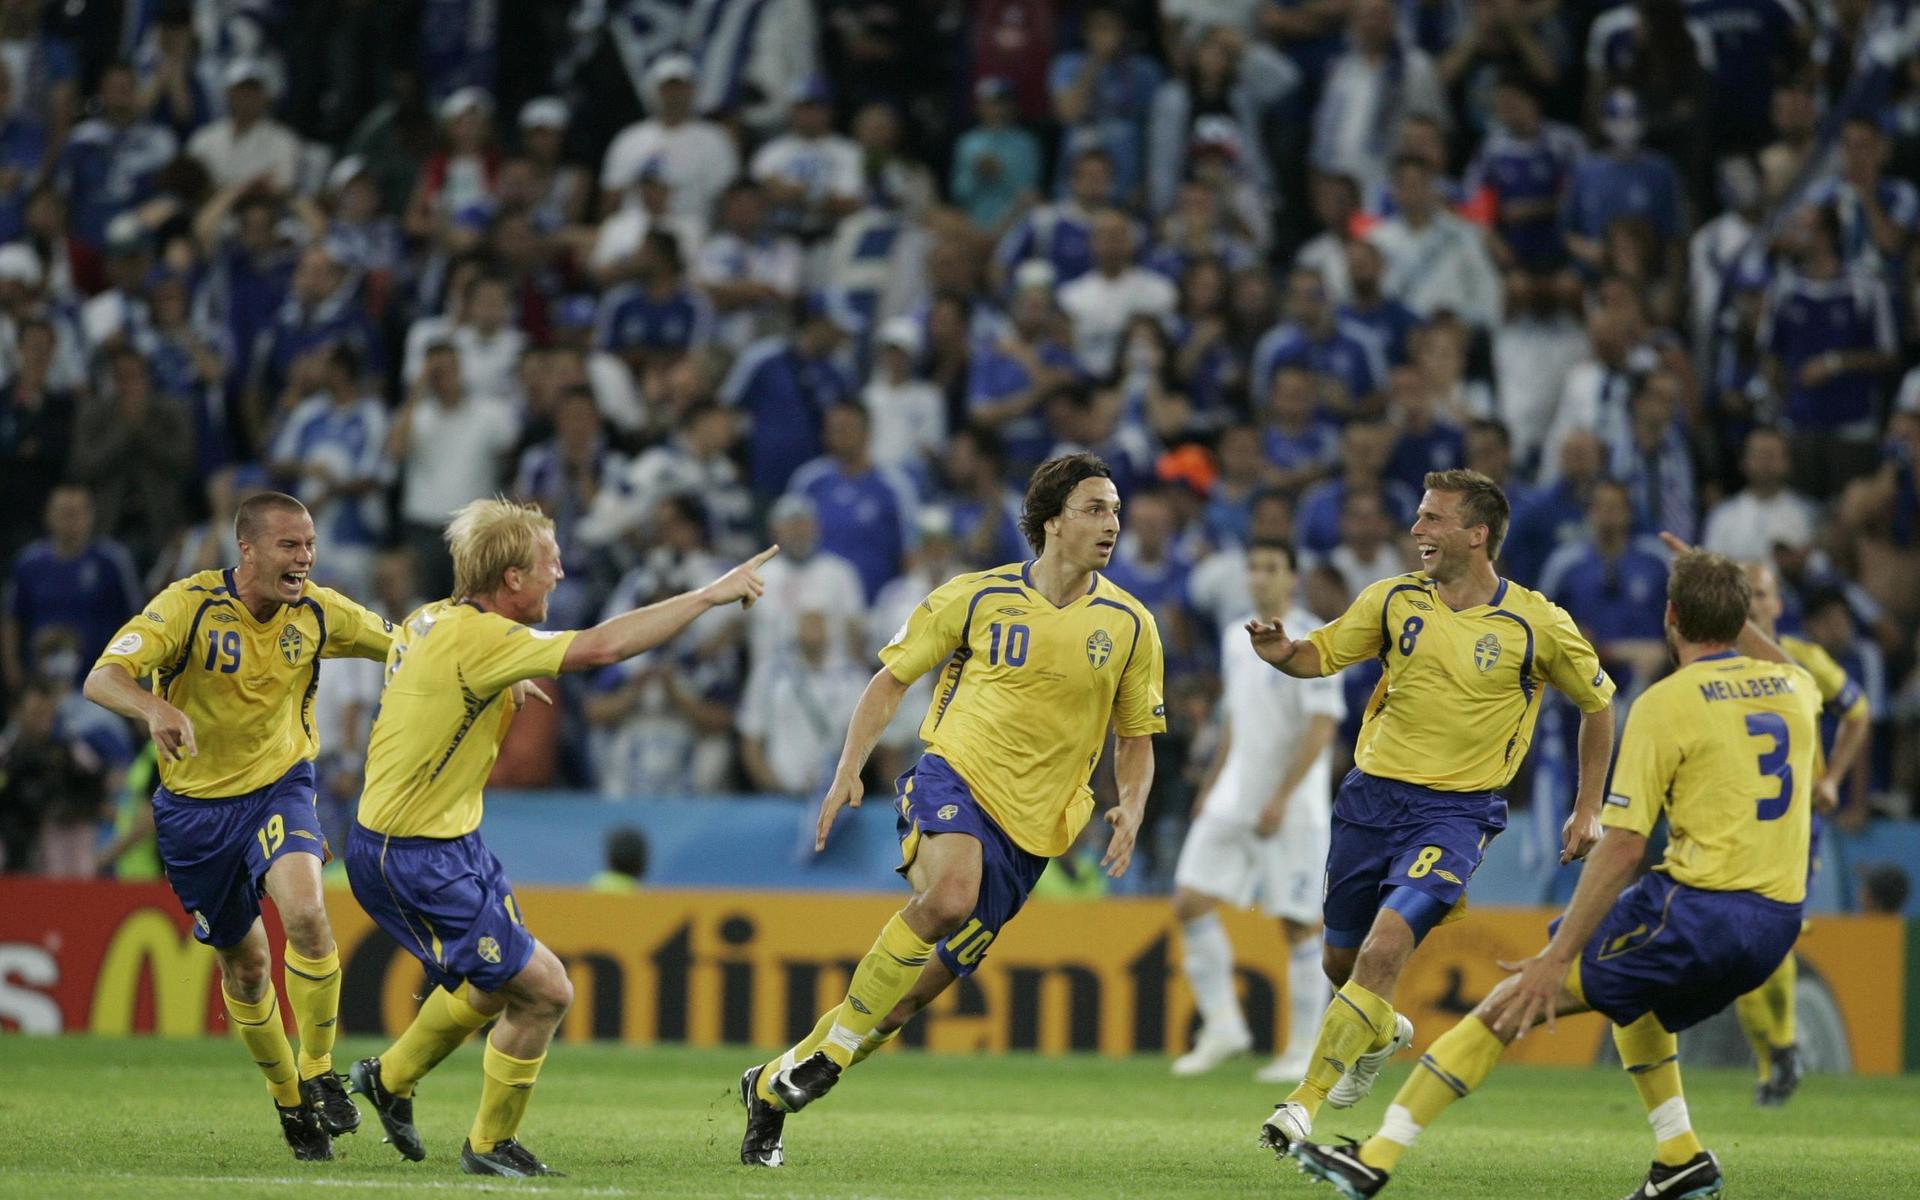 2008 vann Sverige öppningsmatchen mot Grekland med 2-0 efter mål av Zlatan Ibrahimovic. Det räckte inte till avancemang. 